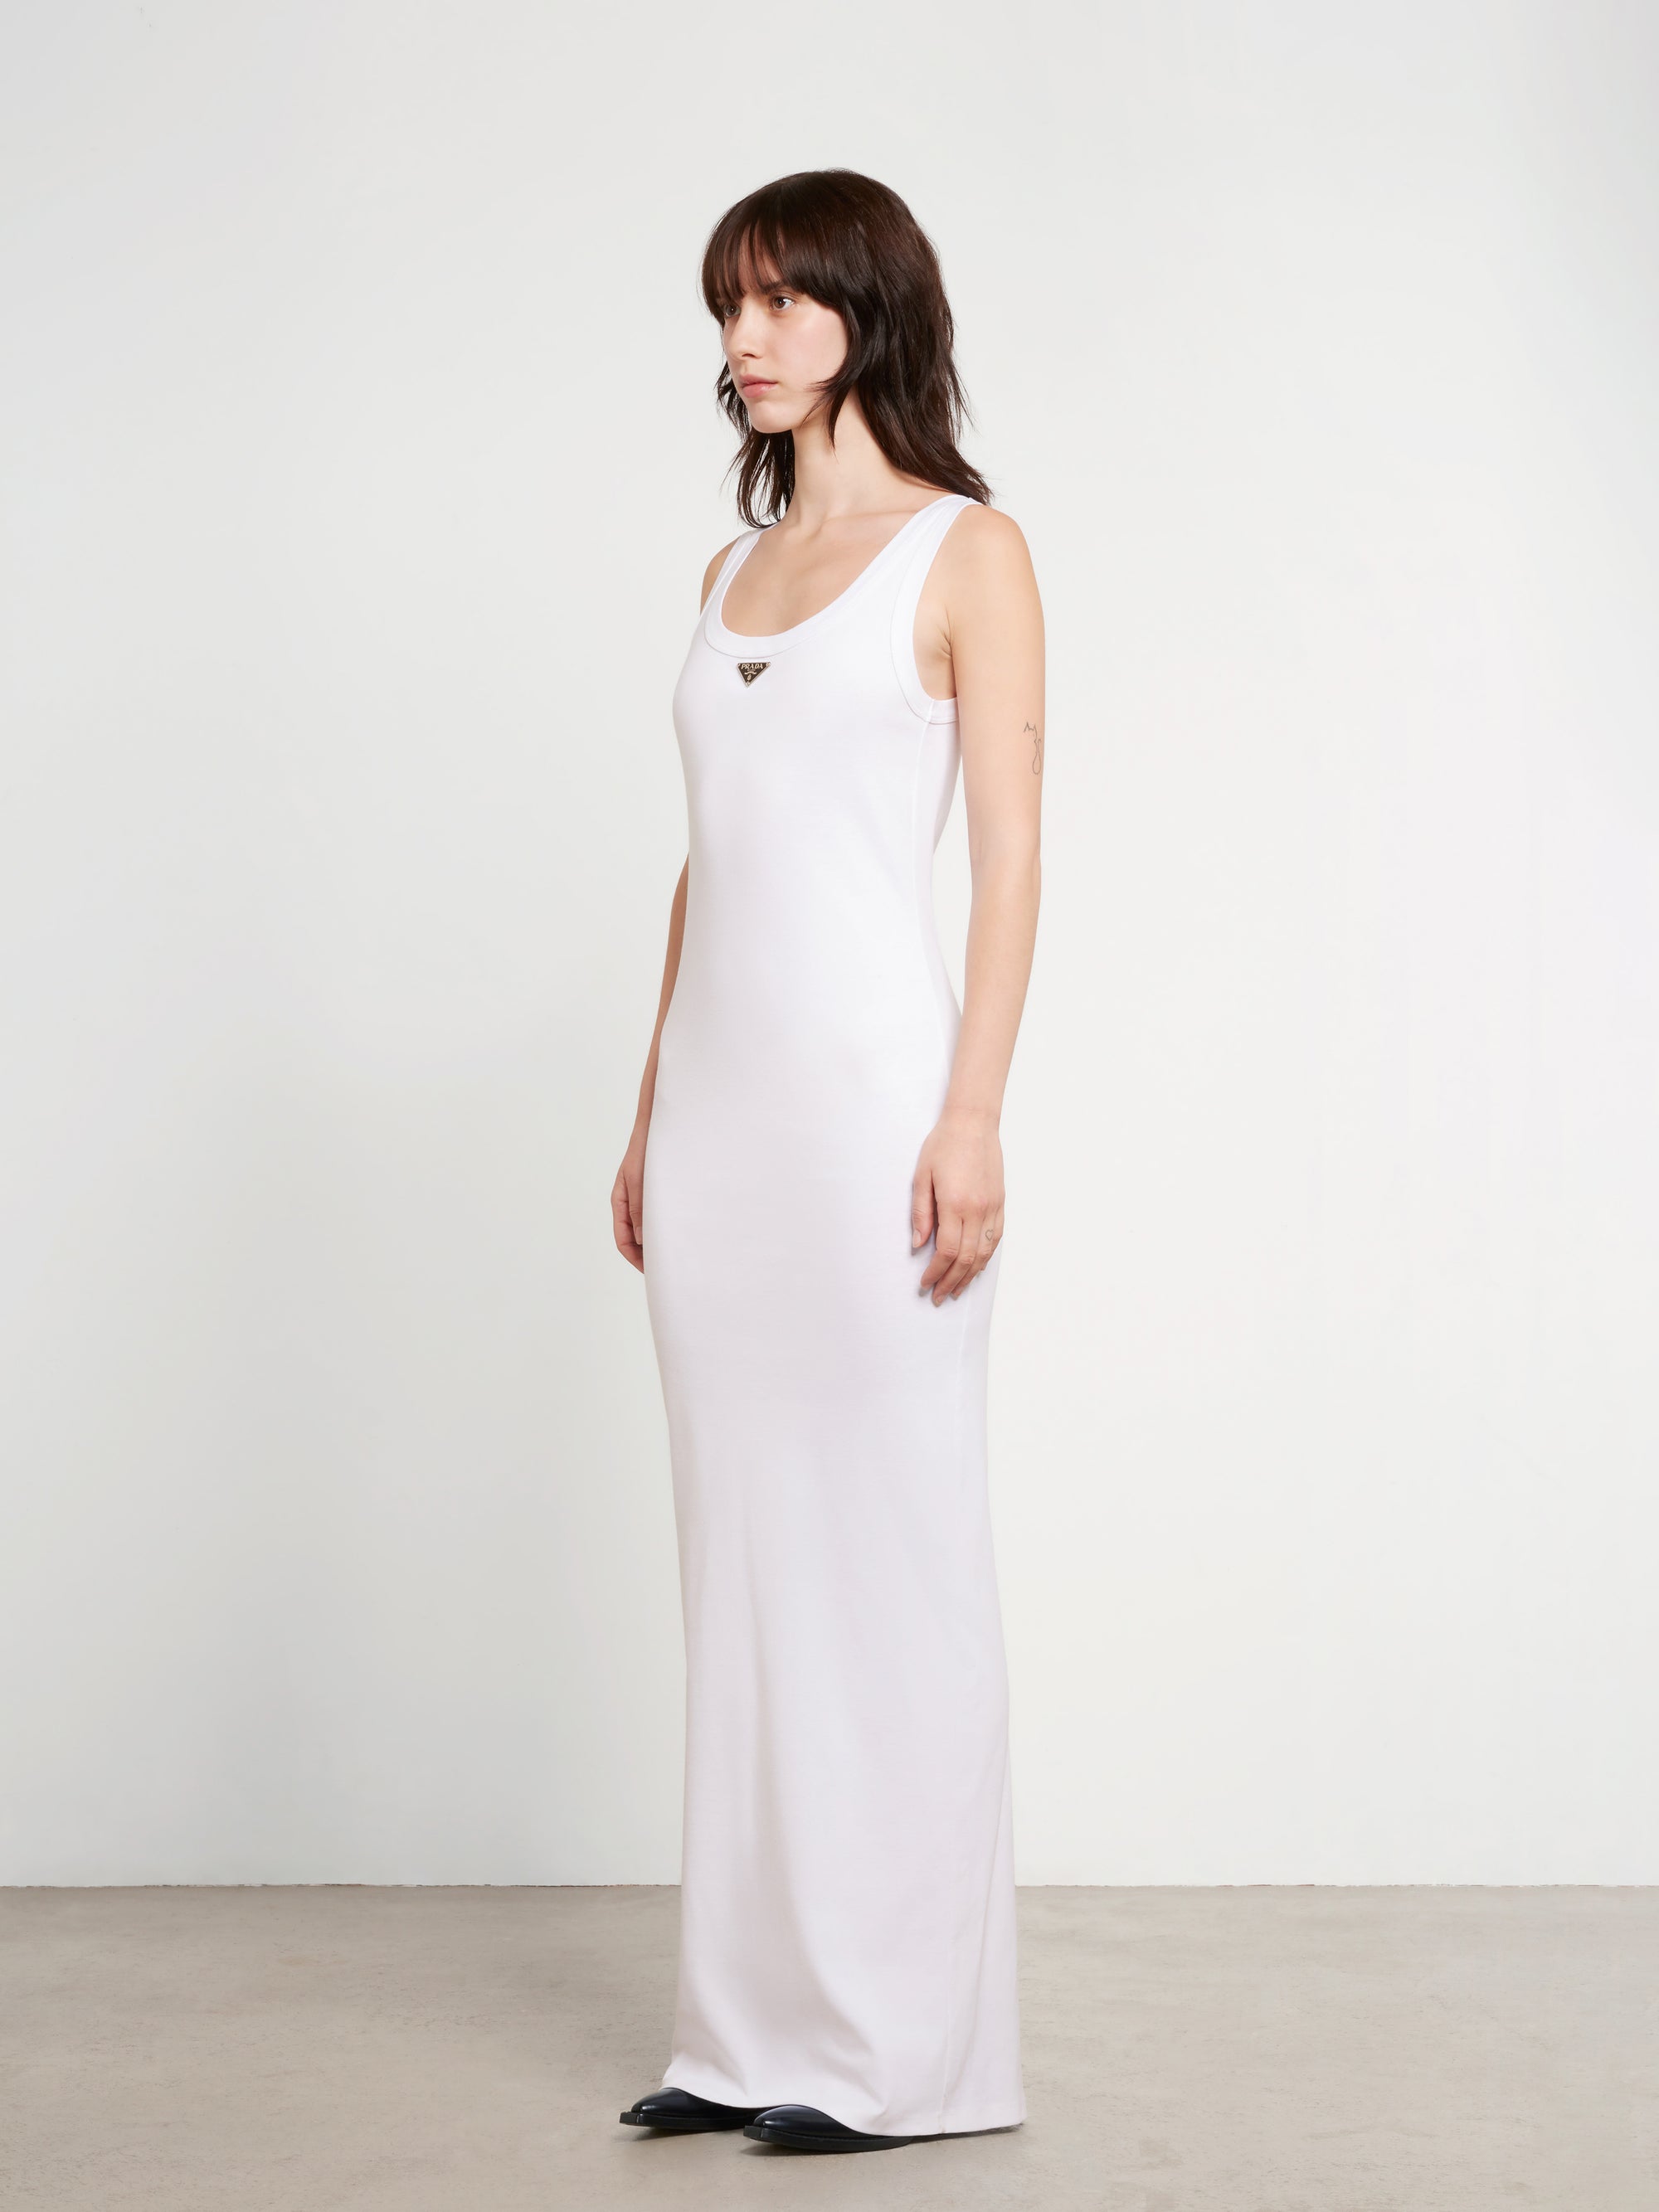 Prada - Women’s Cotton Jersey Dress - (White) view 2